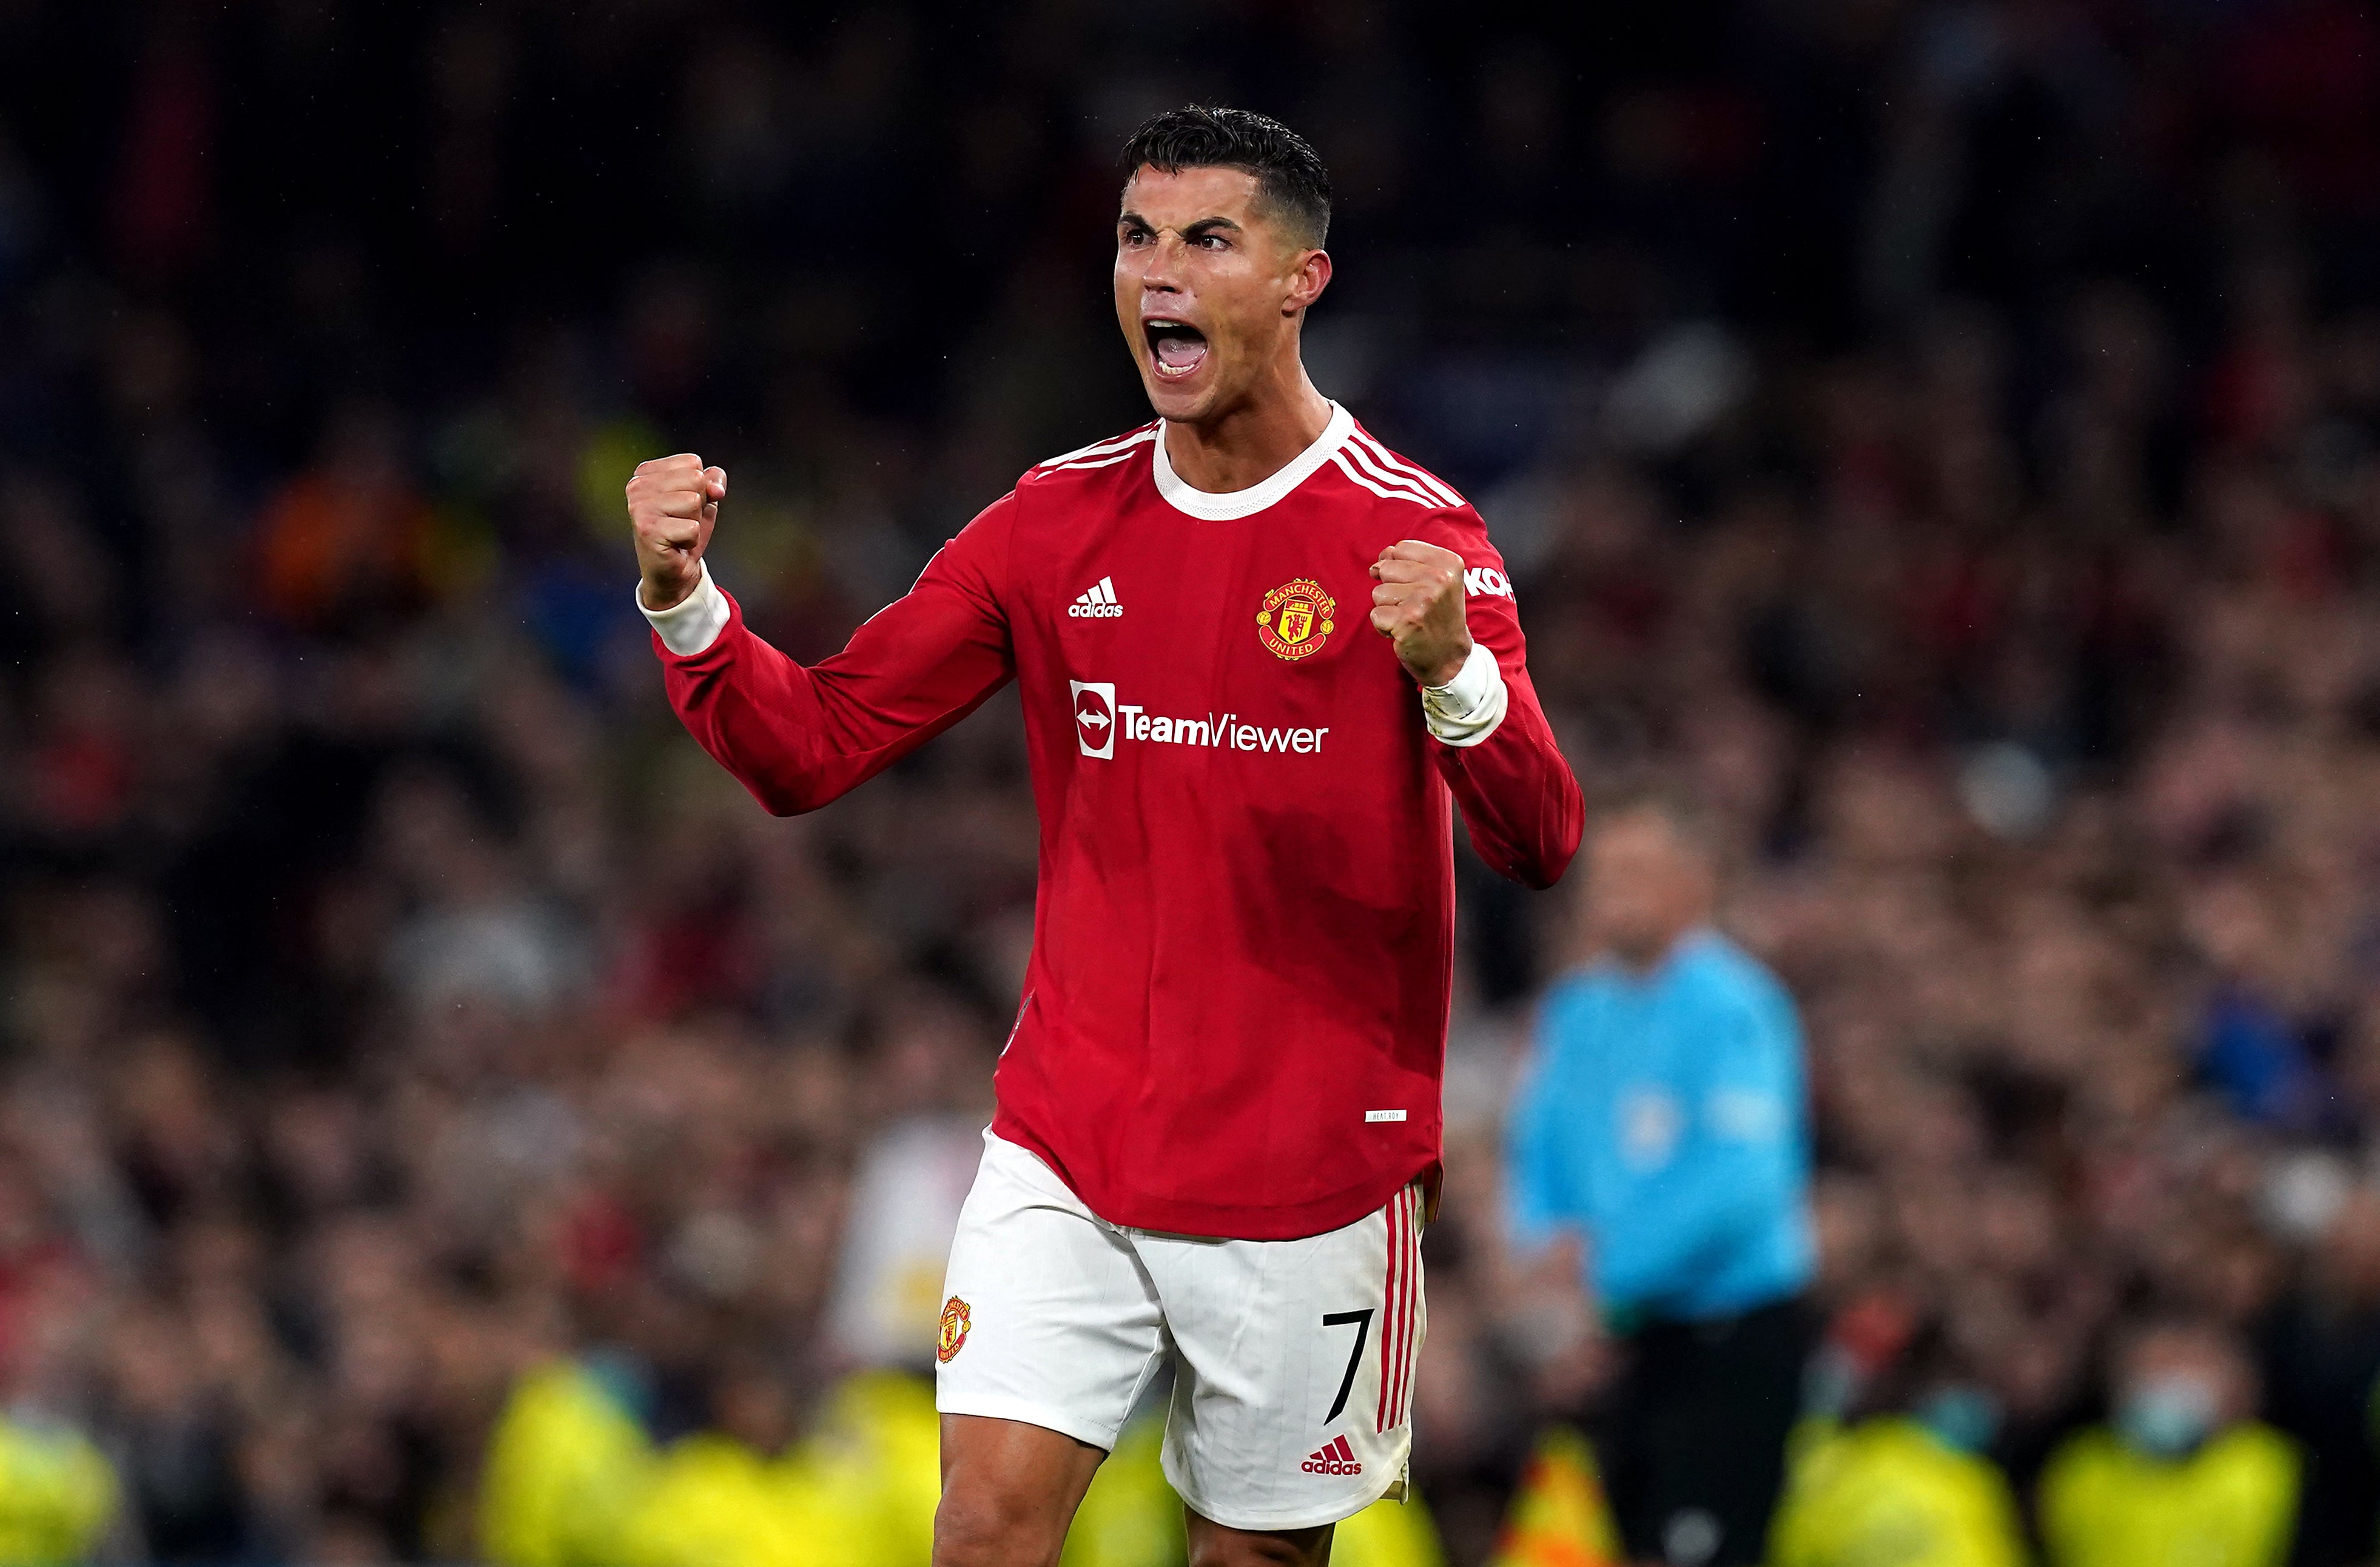 Ronaldo scored the winning goal against Villarreal at Old Trafford (Martin Rickett/PA)